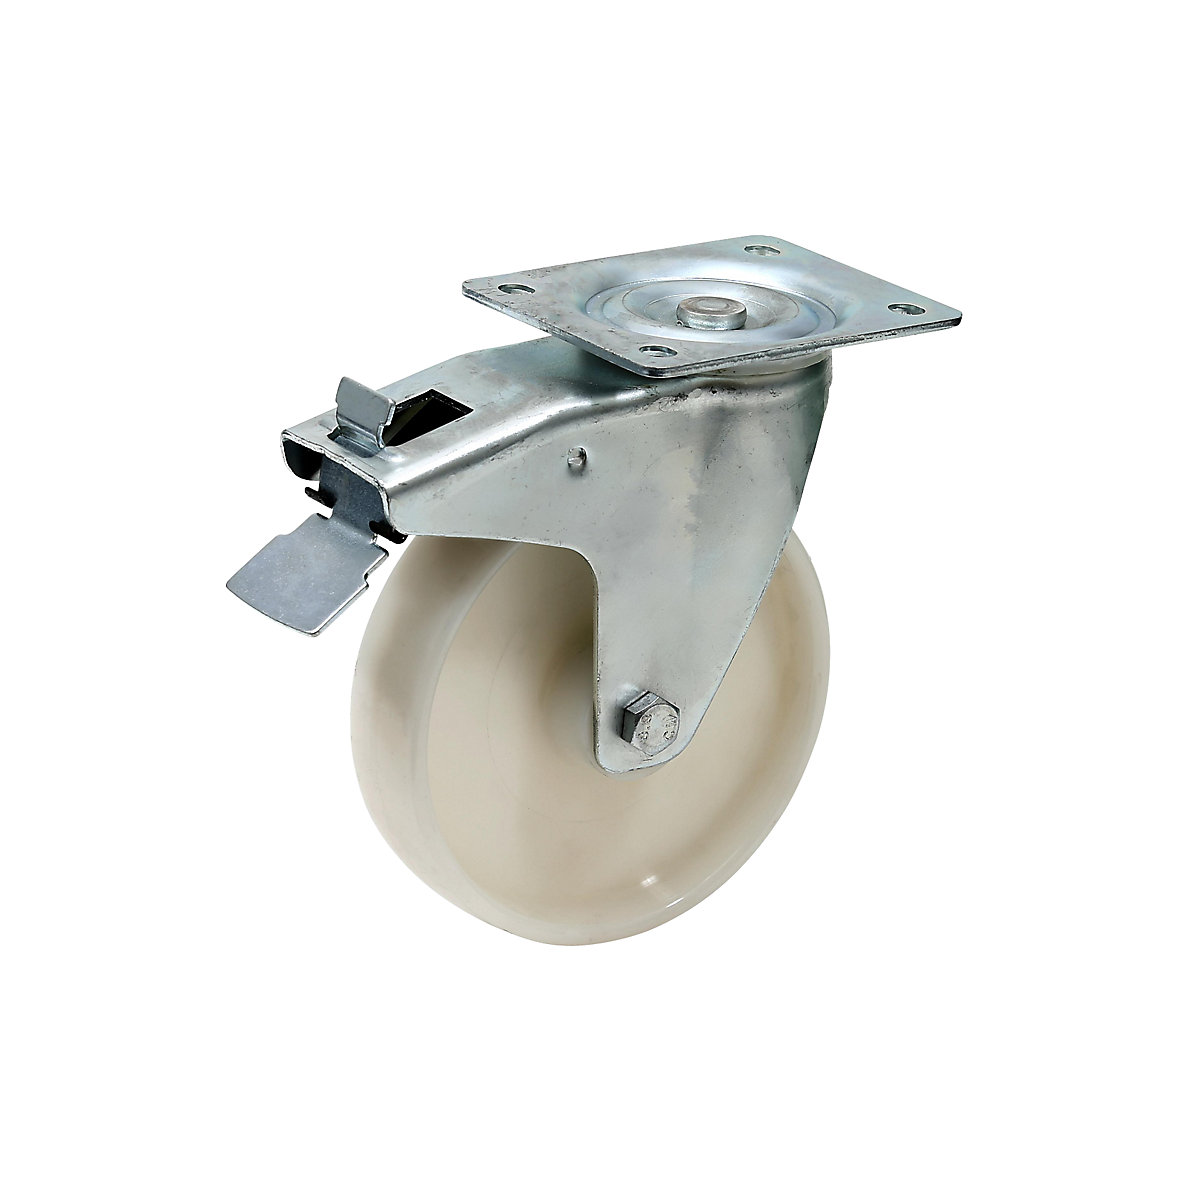 Replacement castor for tilting skip – eurokraft pro, Ø 180 mm, nylon, swivel castor with wheel stop-2